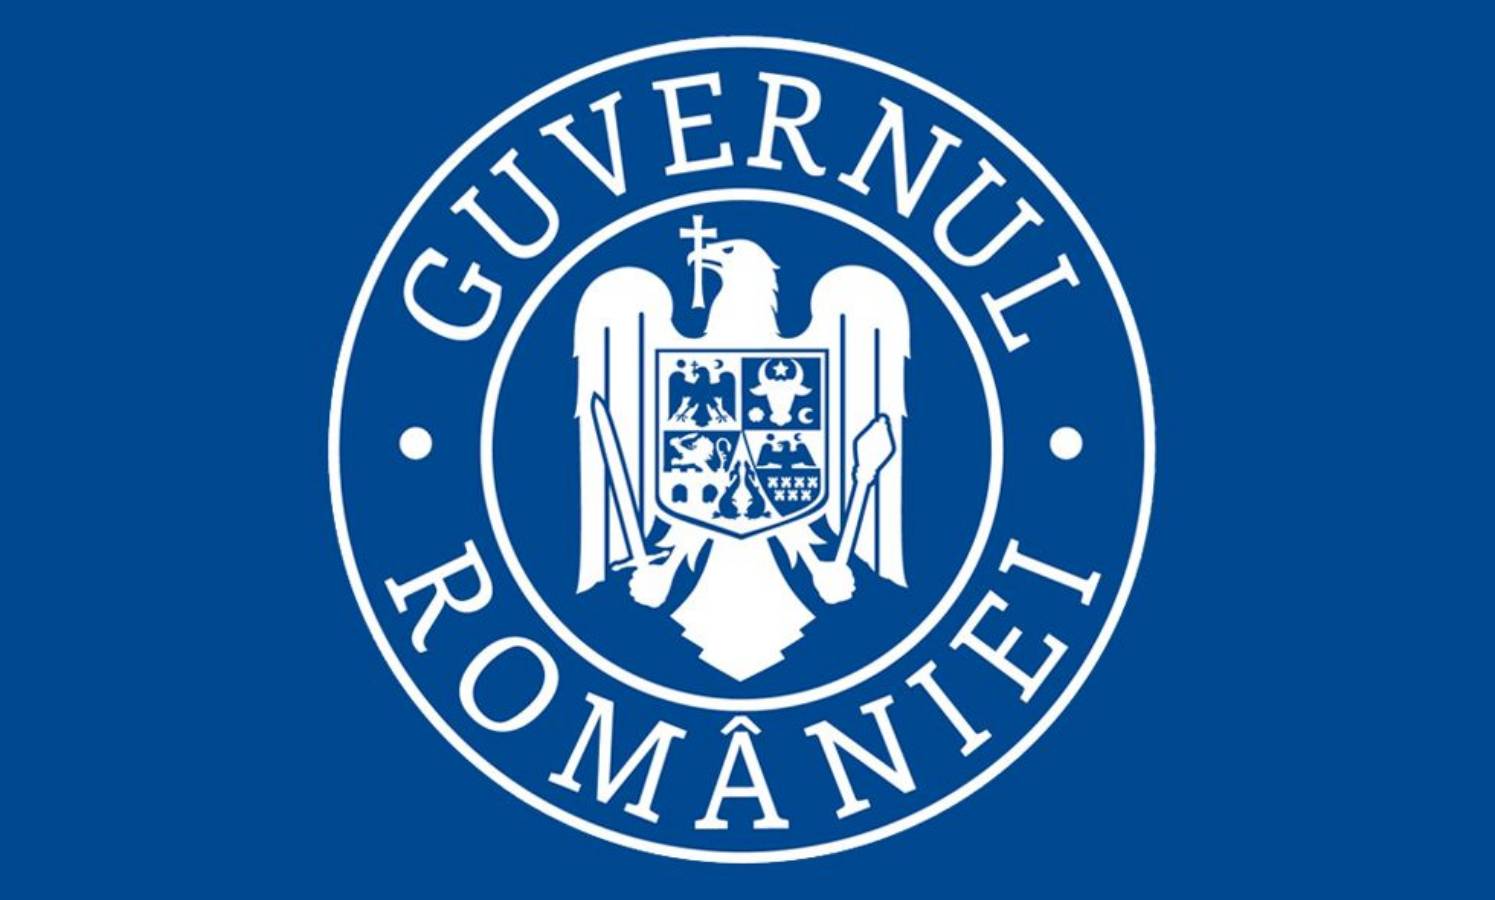 Romanian hallituksen koronavirusrokoteesite